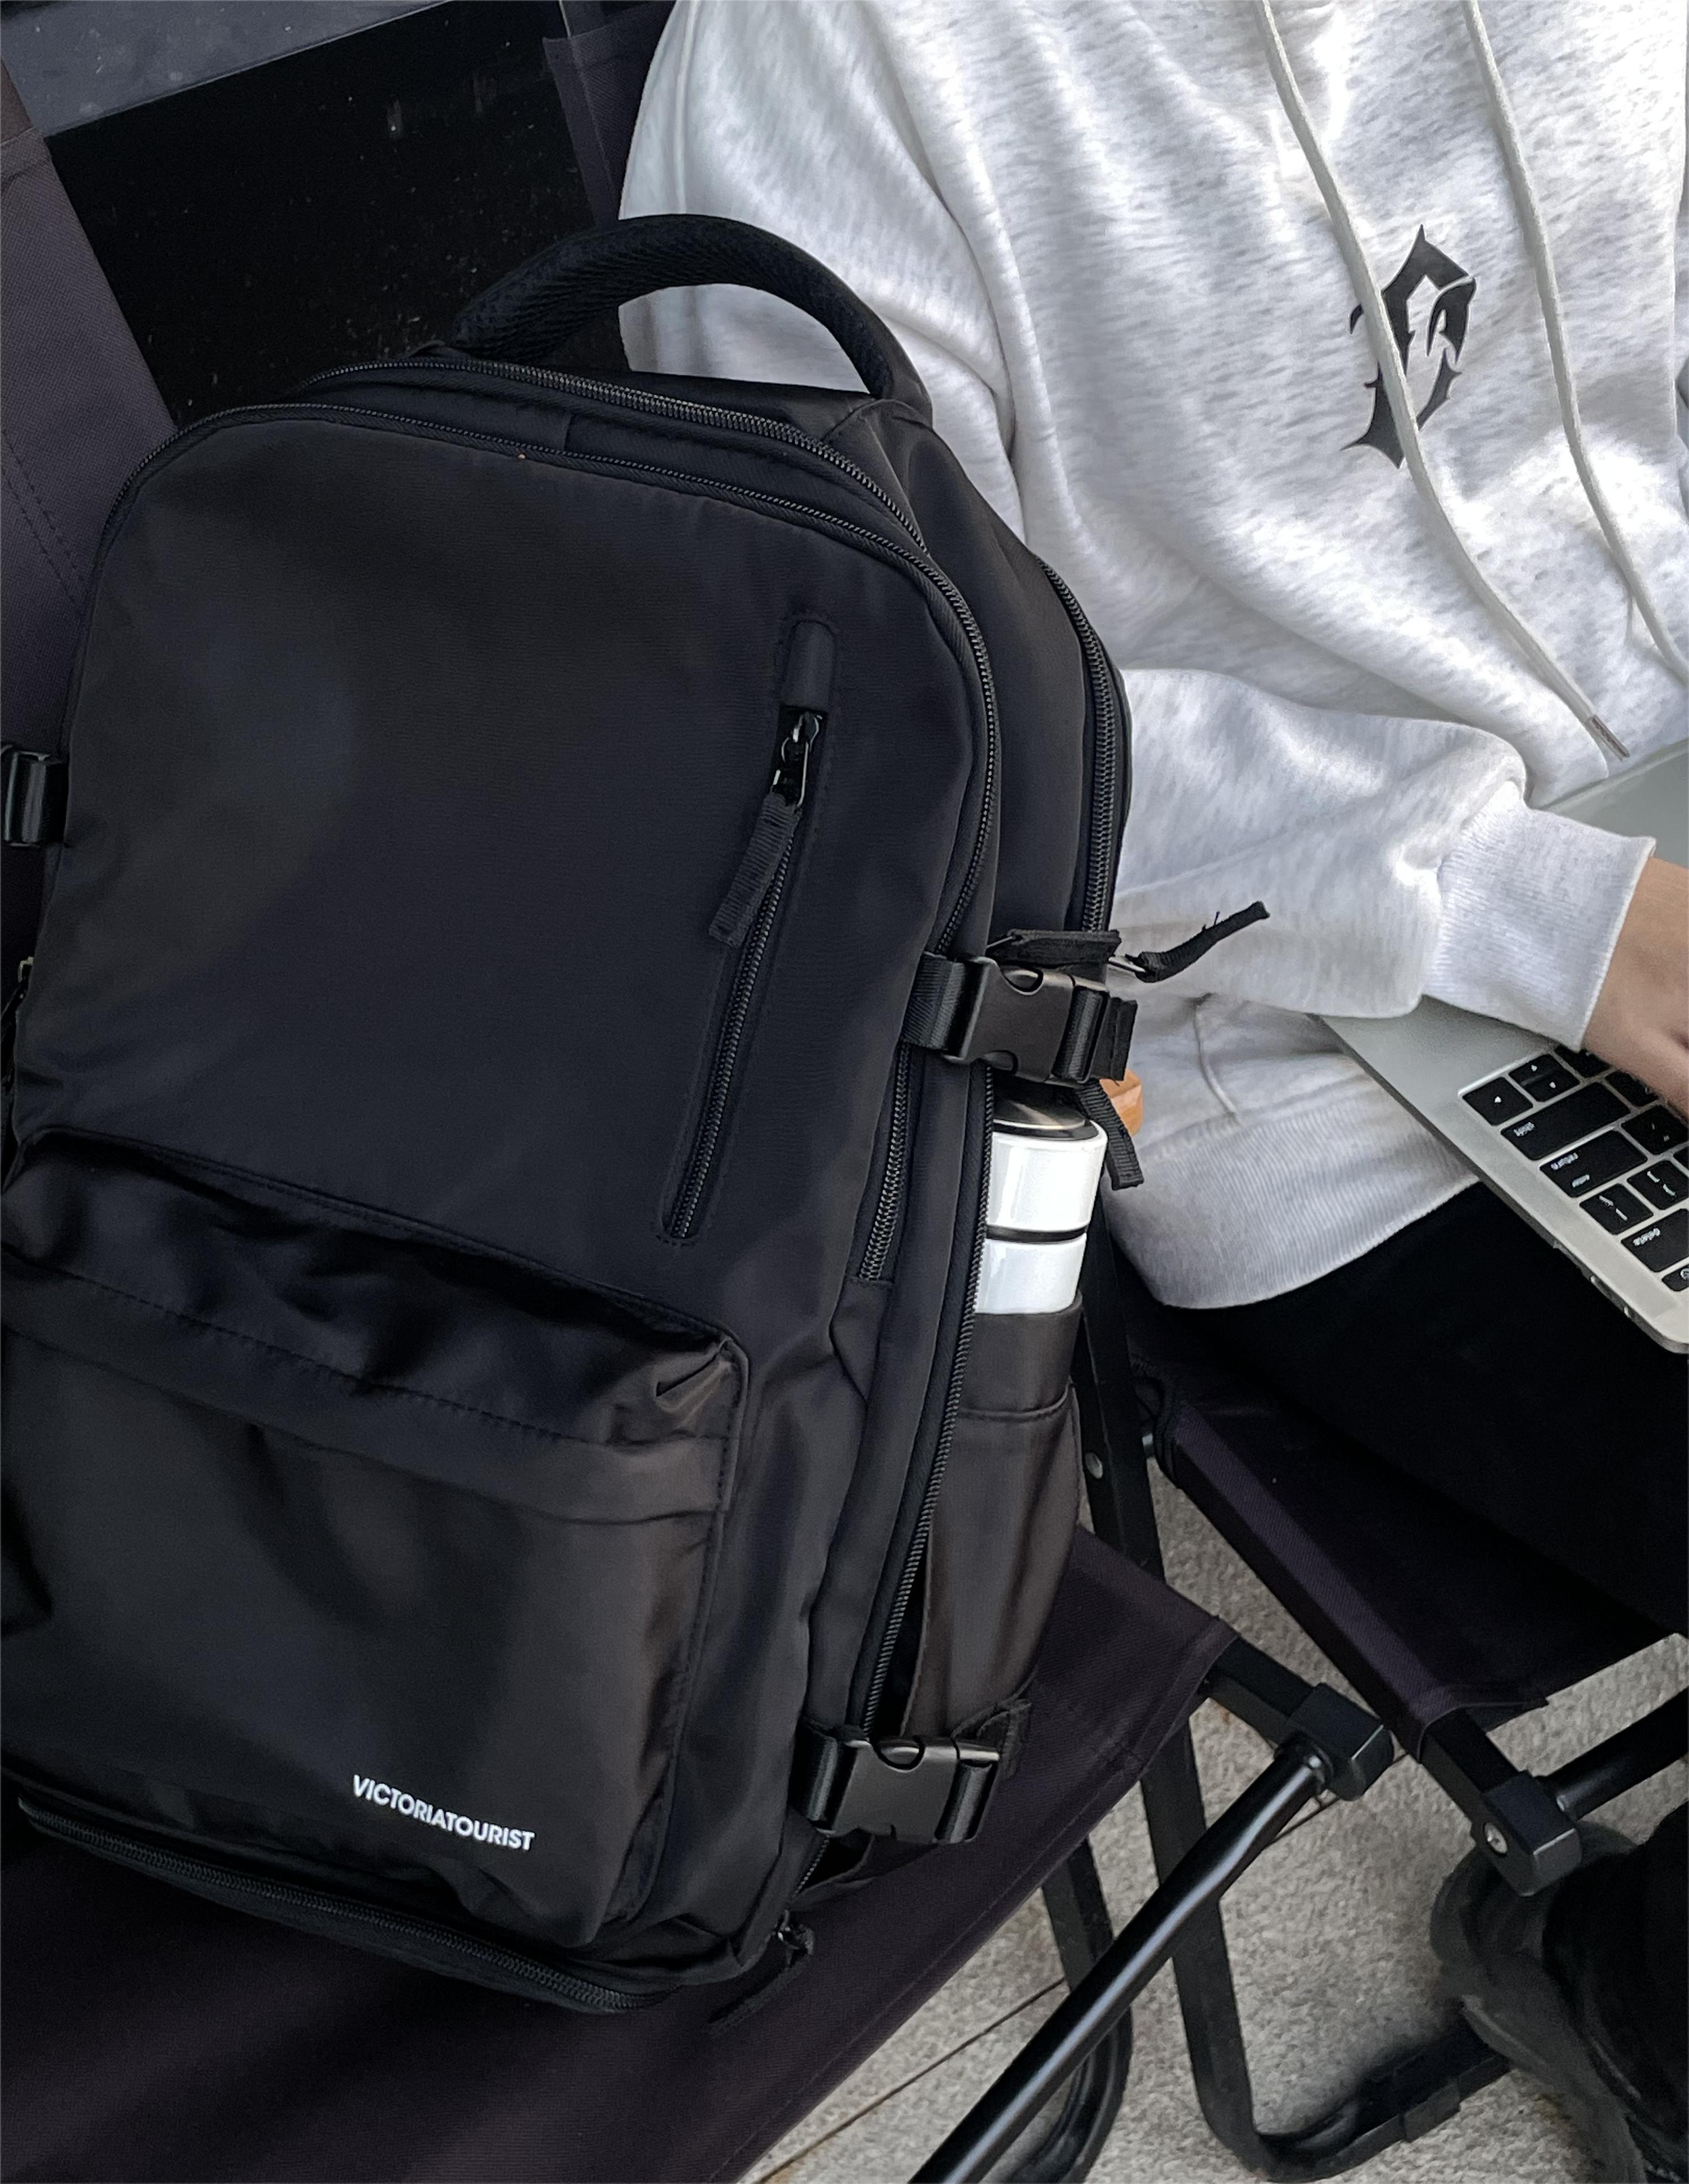 维多利亚旅行者双肩电脑包背包短途旅行登山包书包V7051 箱包皮具/热销女包/男包 双肩背包 原图主图